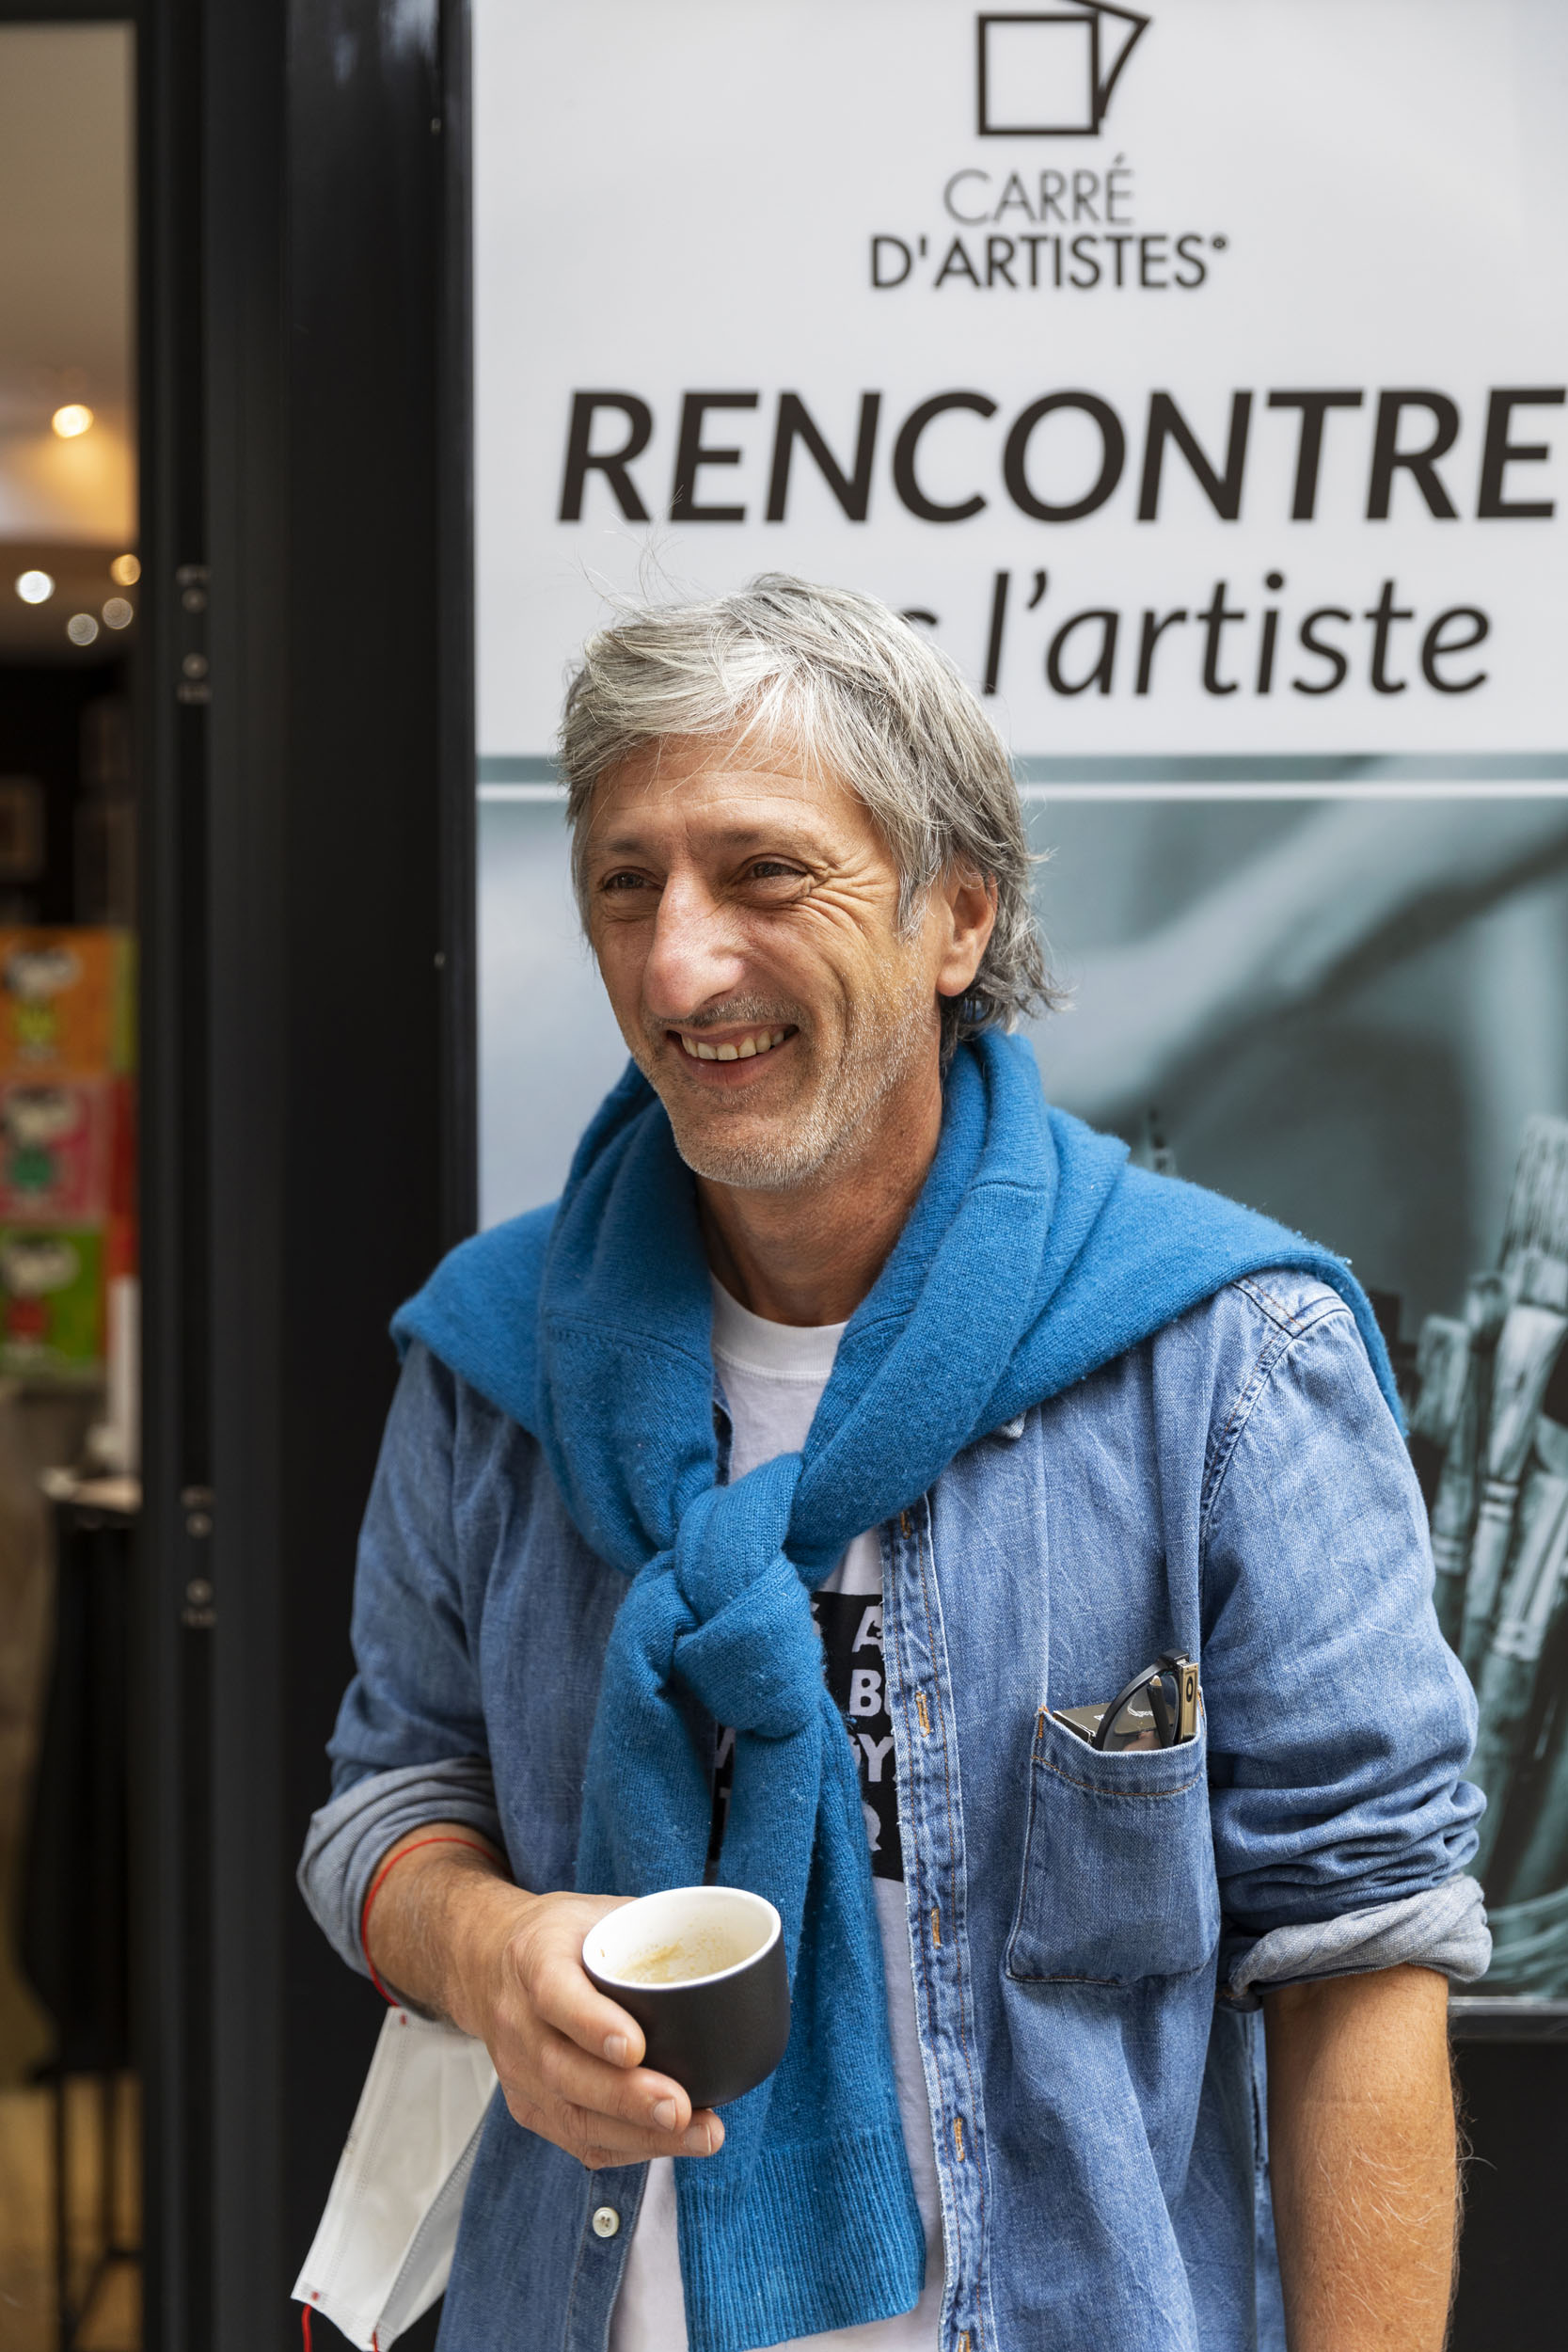 Portrait de l'artiste peintre Kikayou lors d'un vernissage rencontre dans une galerie Carré d'artistes® à Paris.